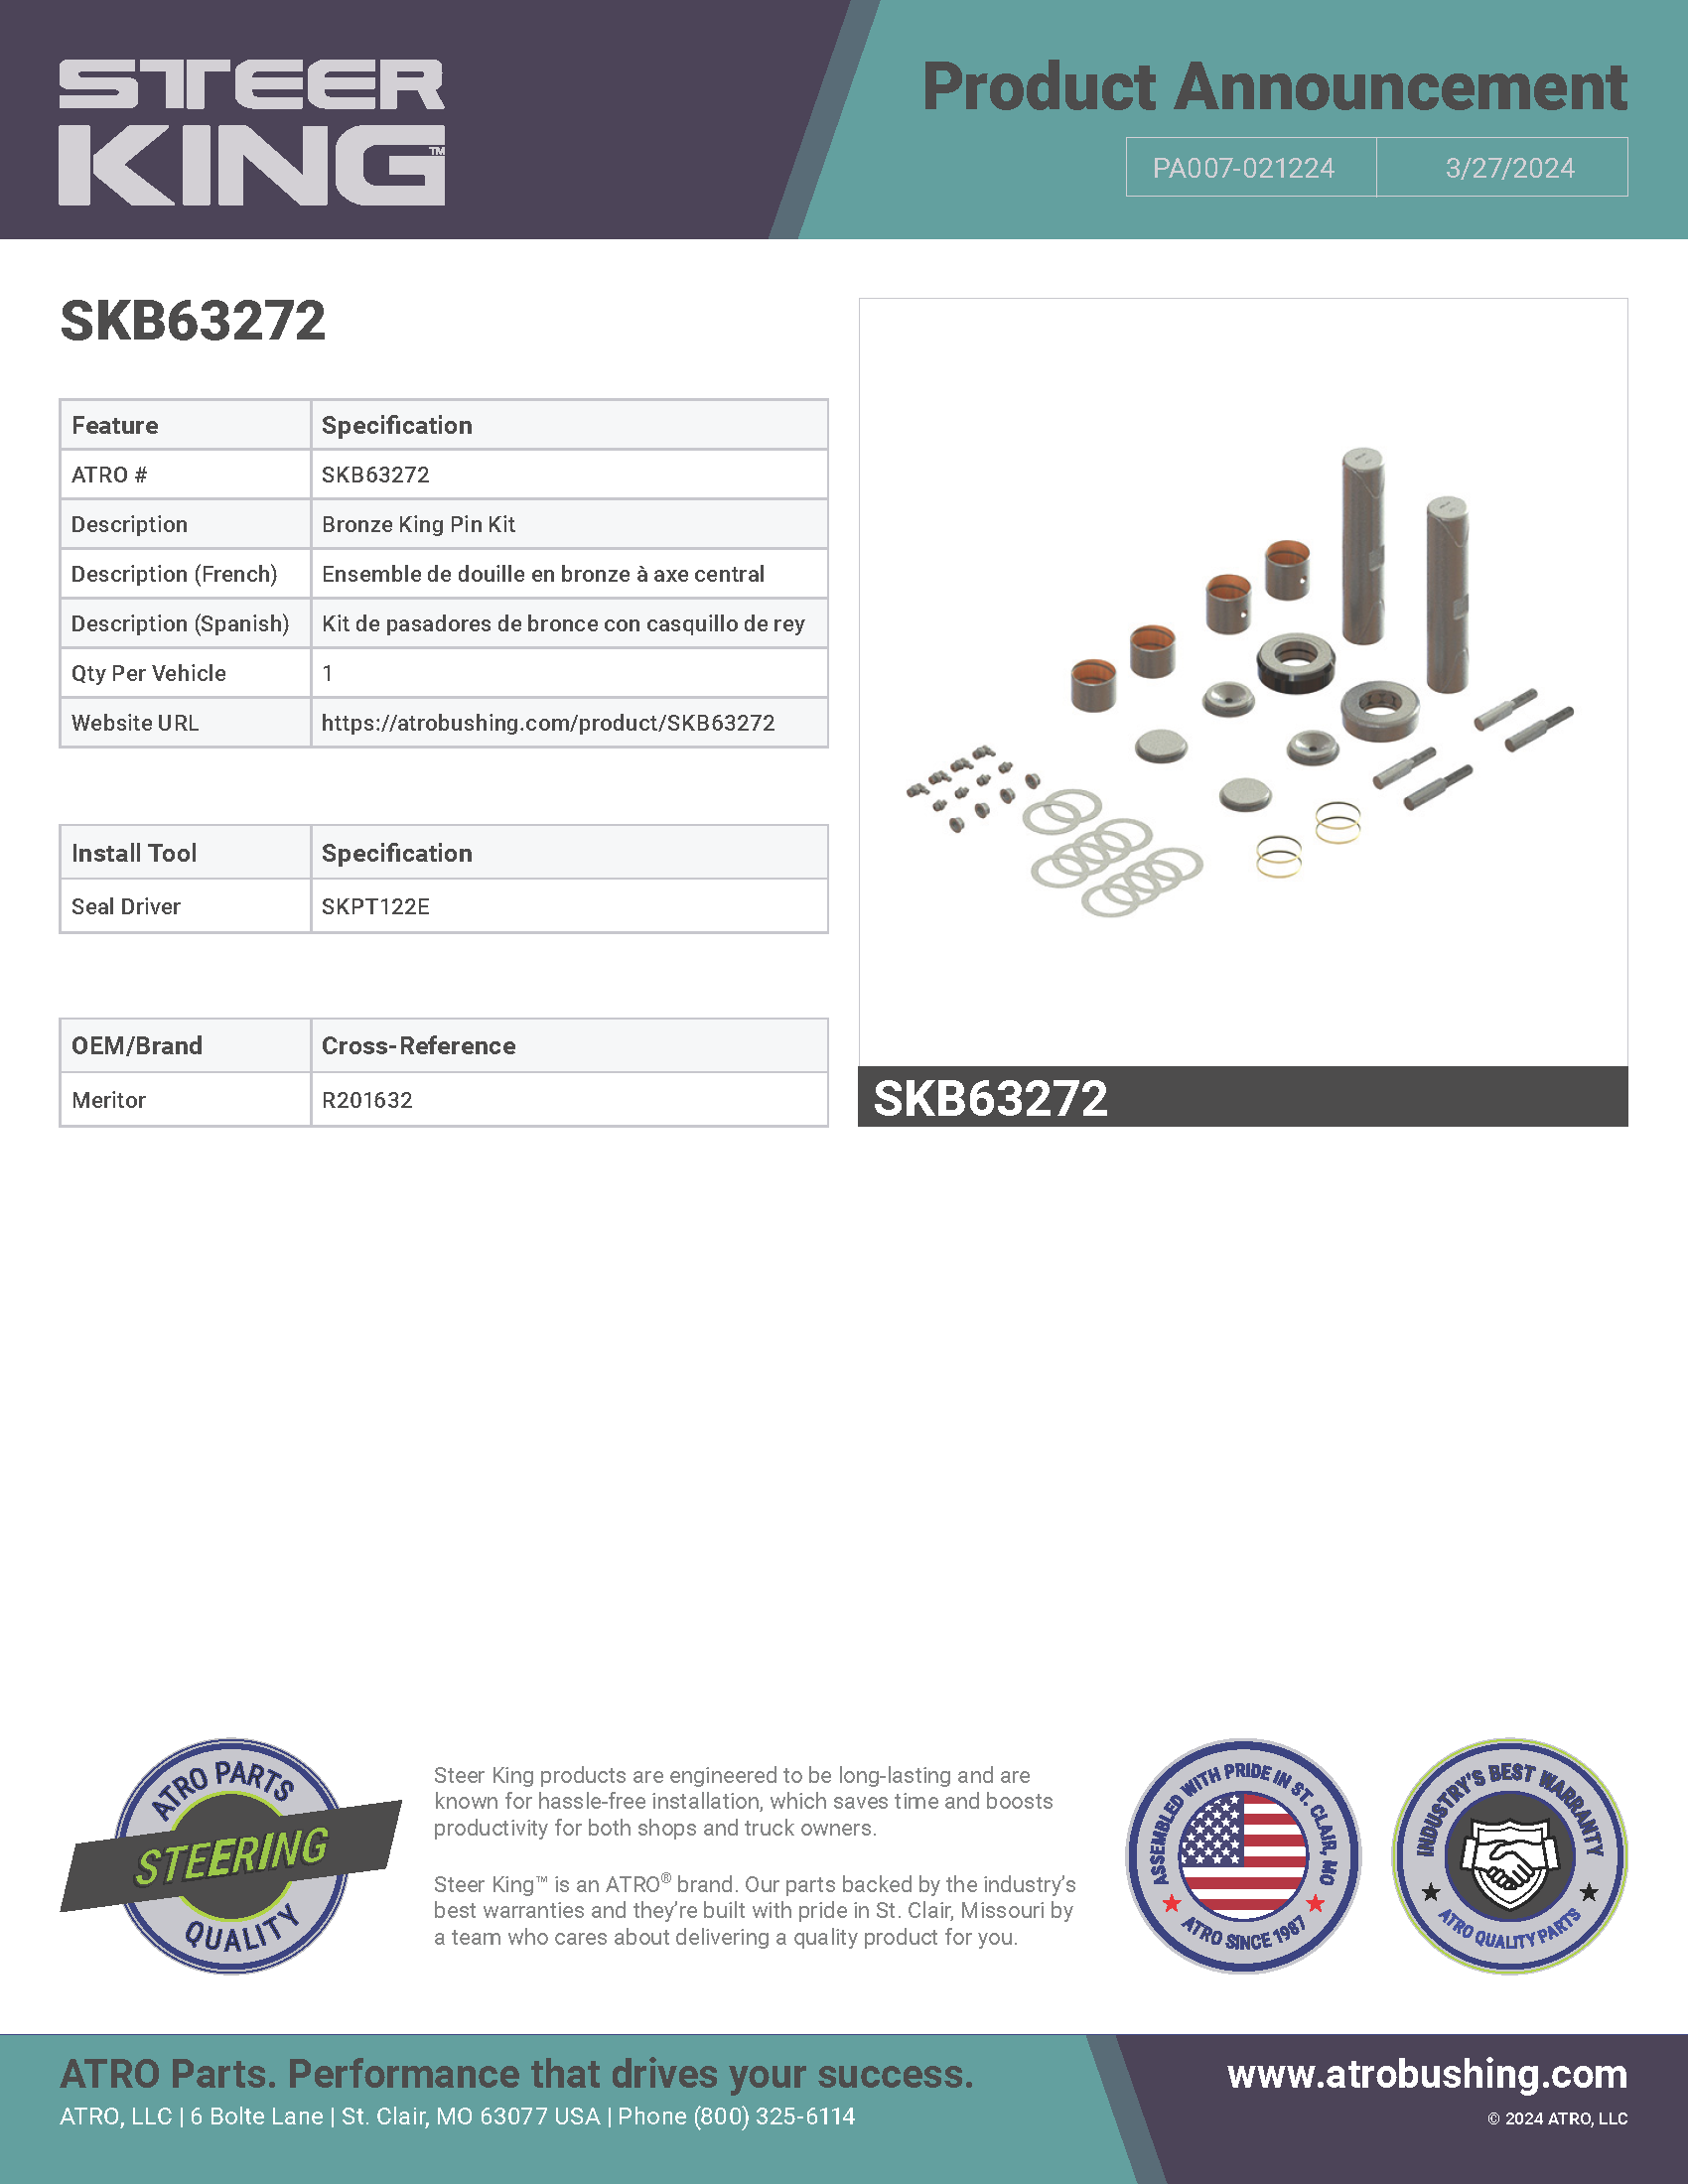 SKB63272 Bronze King Pin Kit PA007-021224